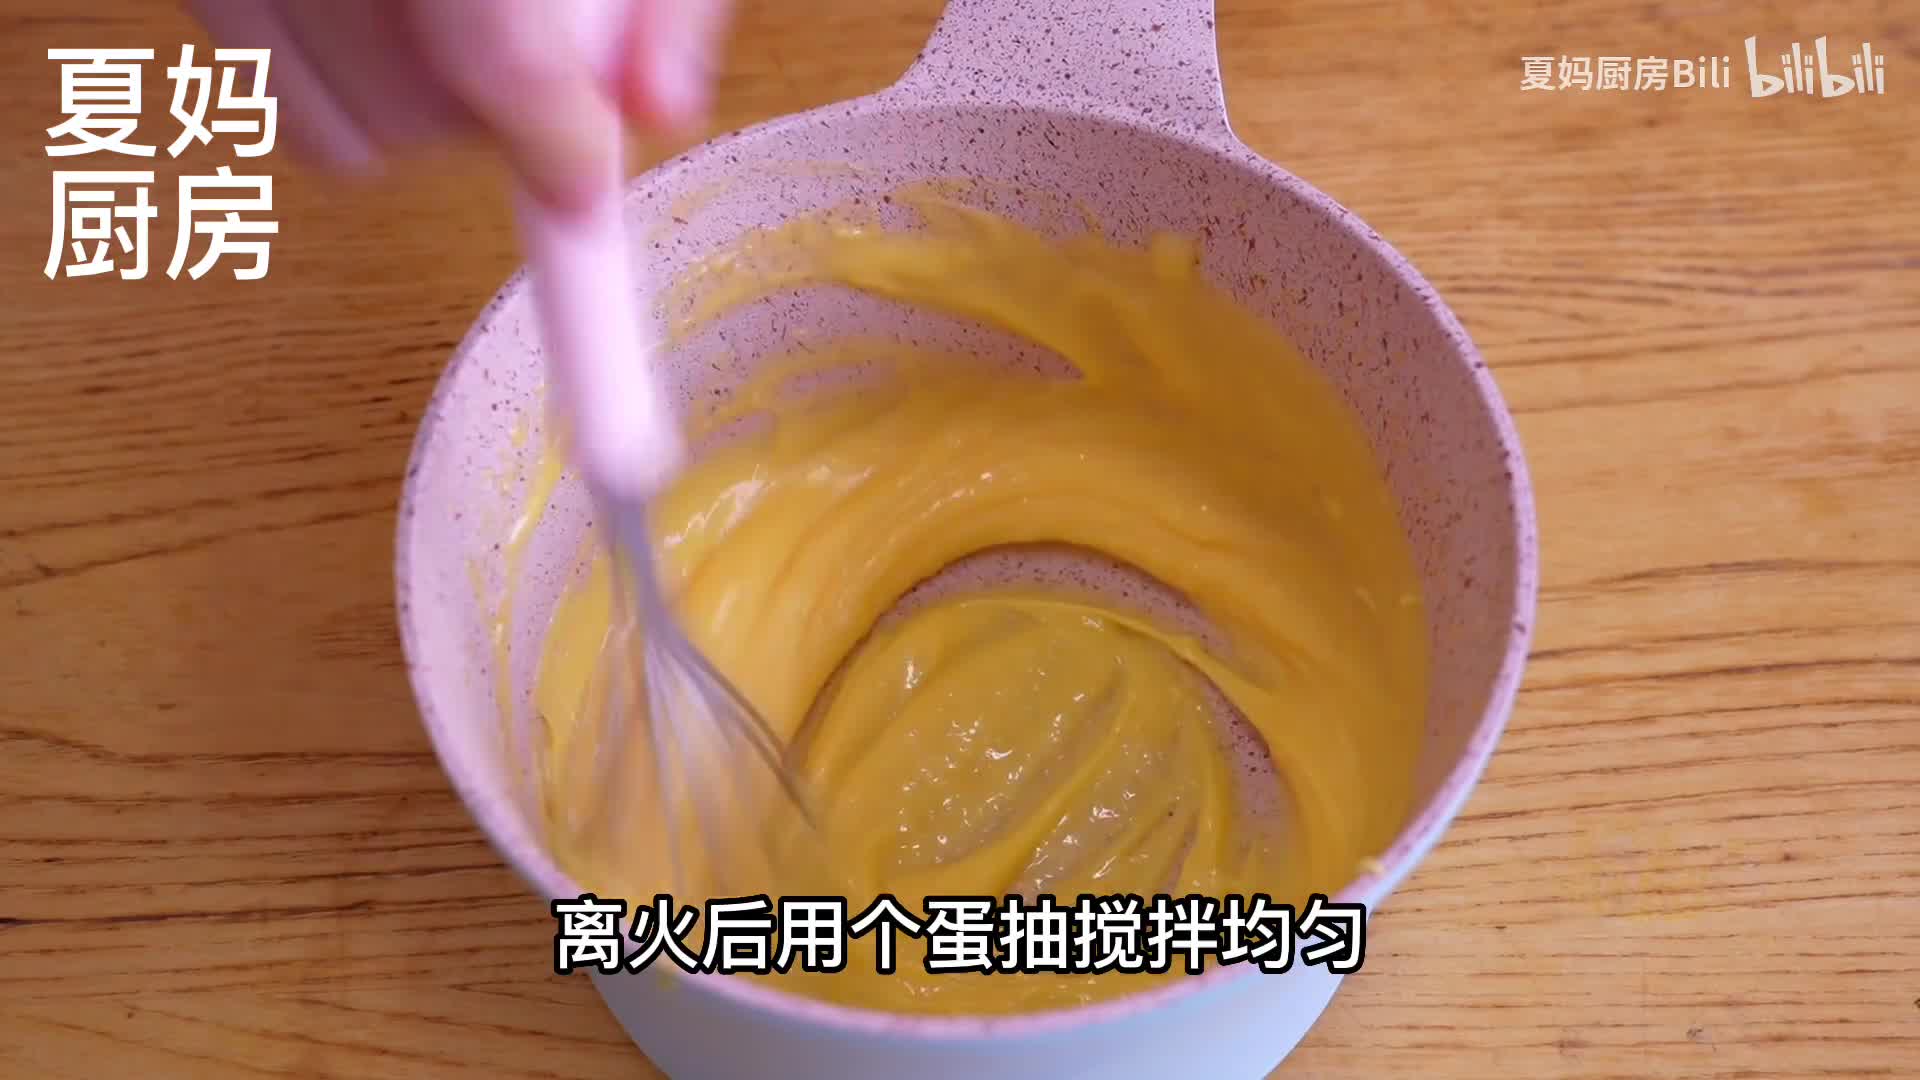 秘制蛋黄沙拉炼乳芥末黄瓜薯条！ - 哔哩哔哩